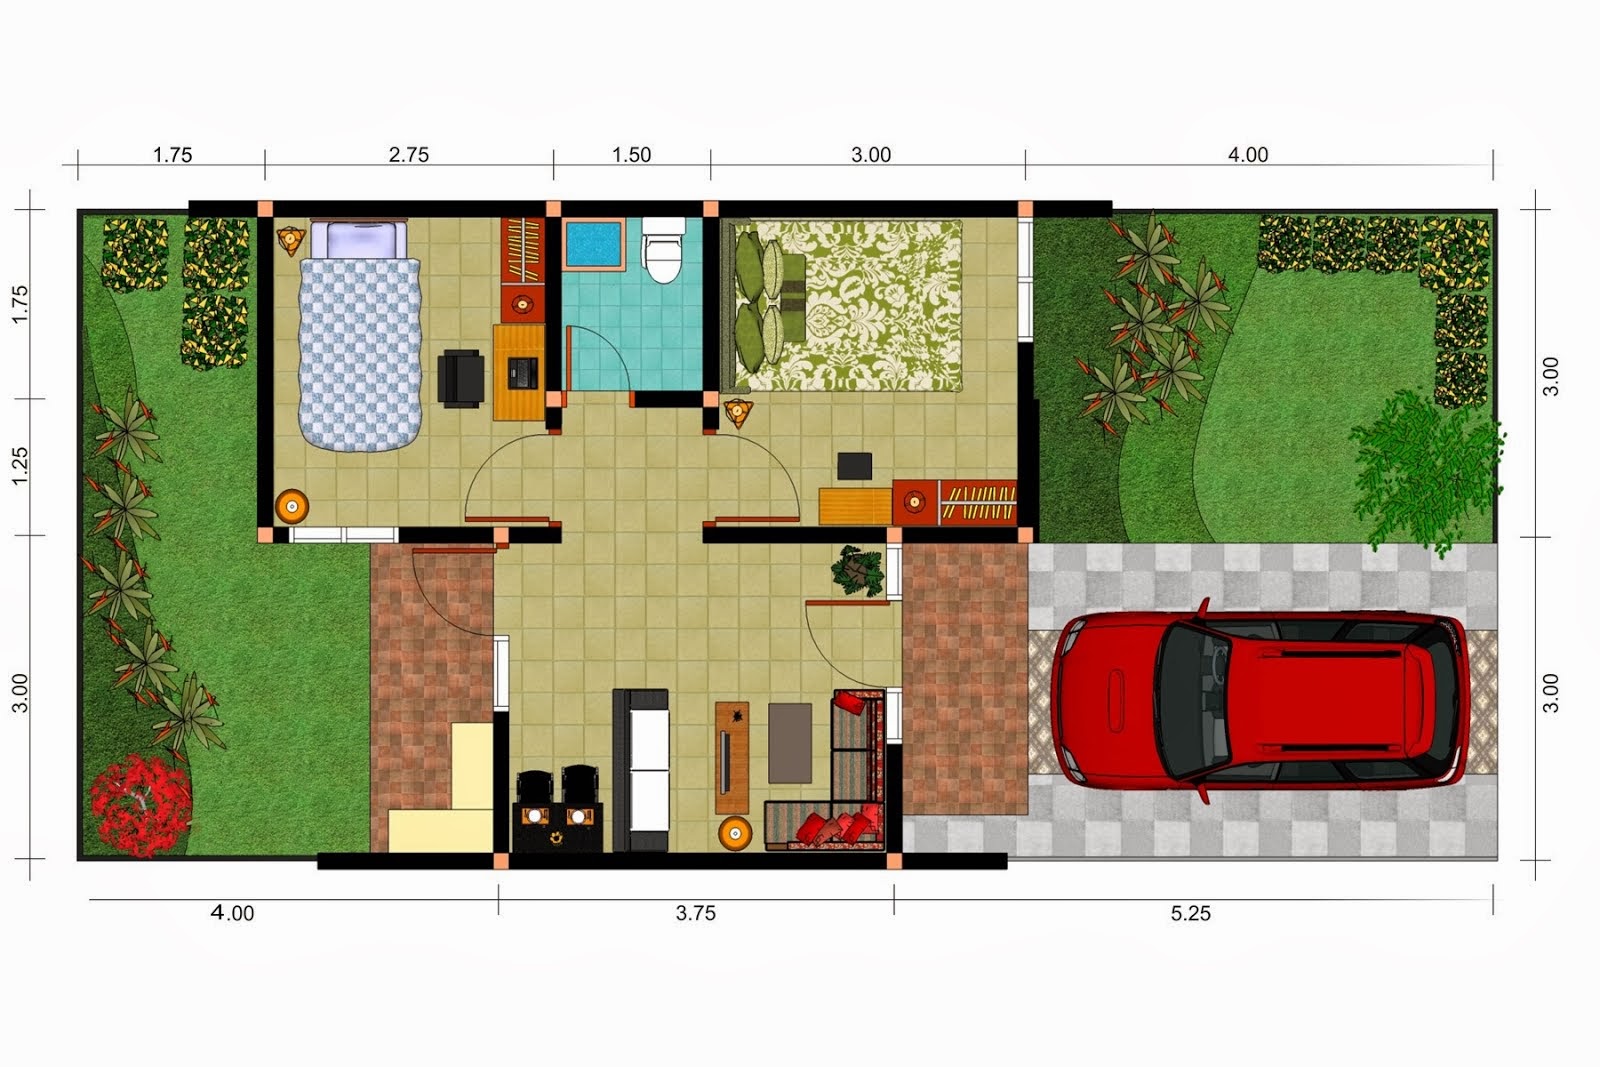 Contoh Denah atau Sketsa Rumah Minimalis Terbaru - Desain Denah Rumah 